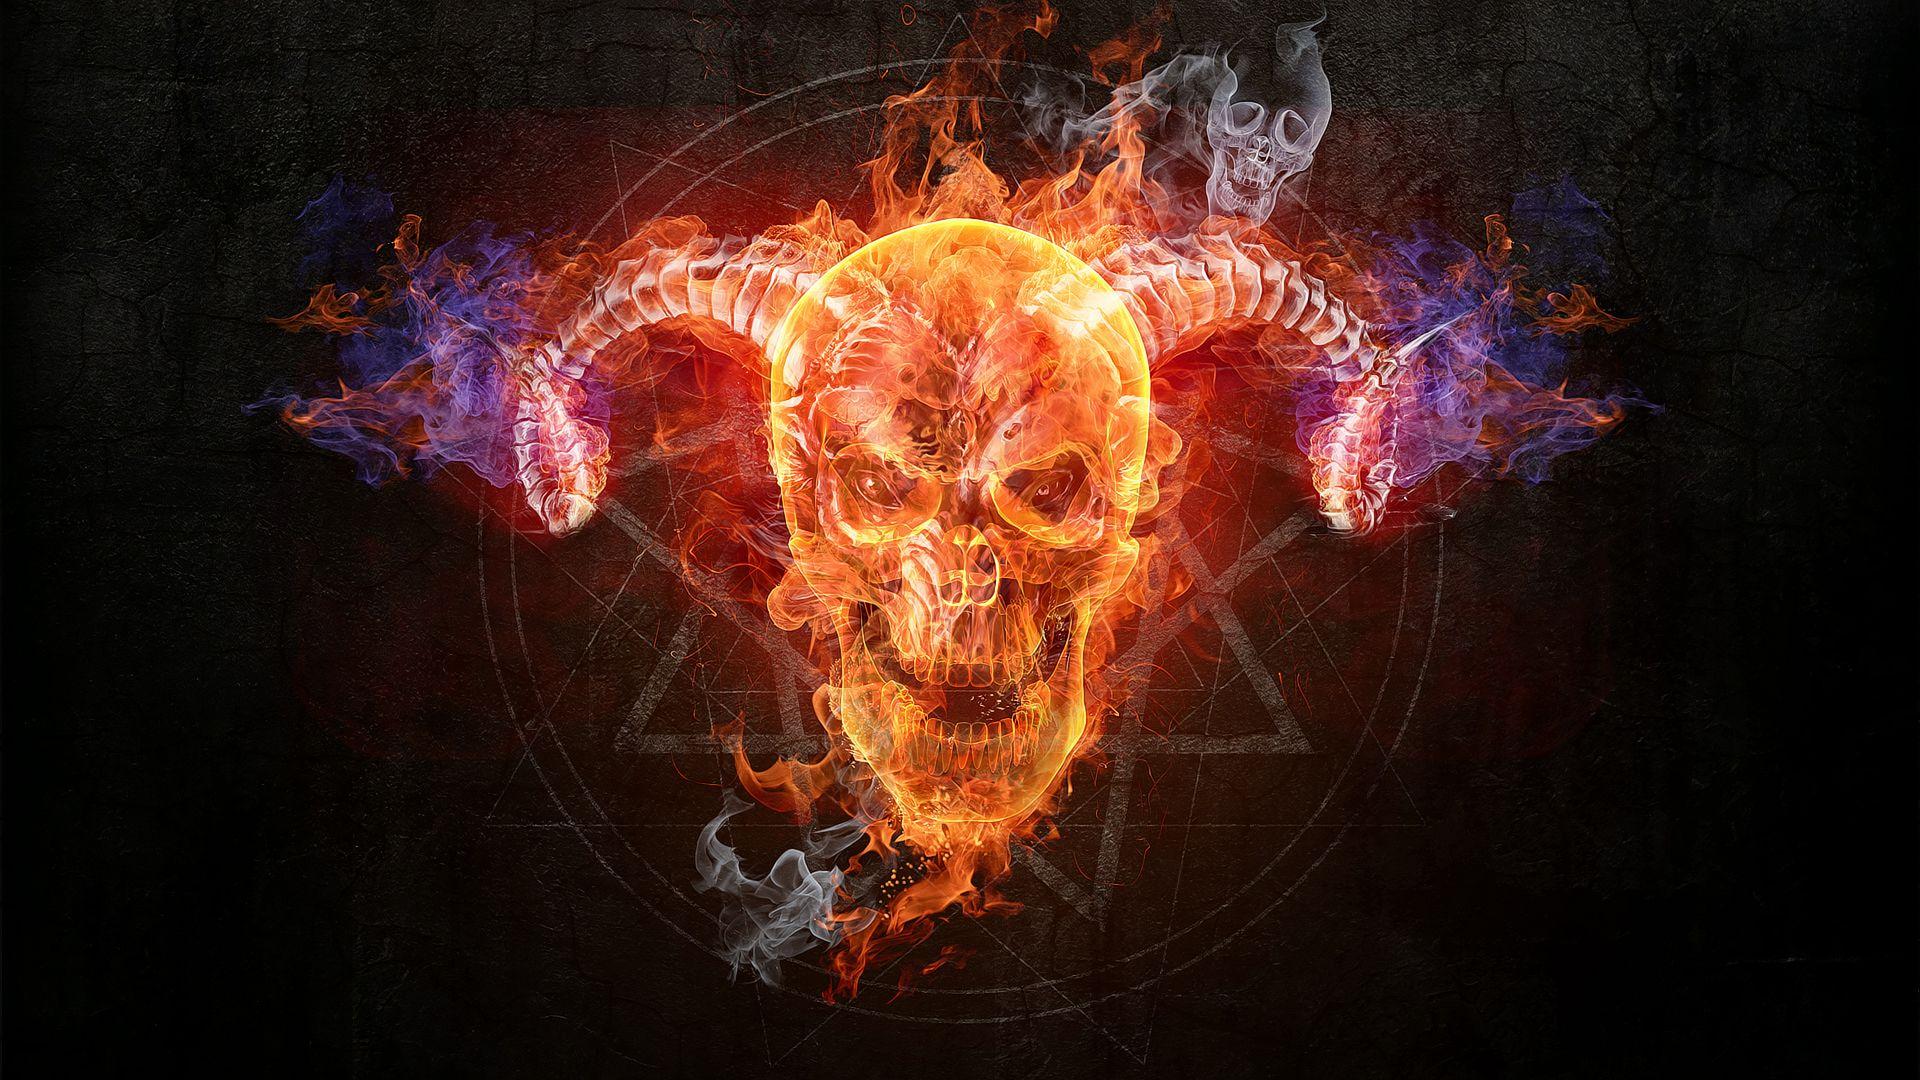 Flaming Skull wallpaper free. My Dark Side. Skull